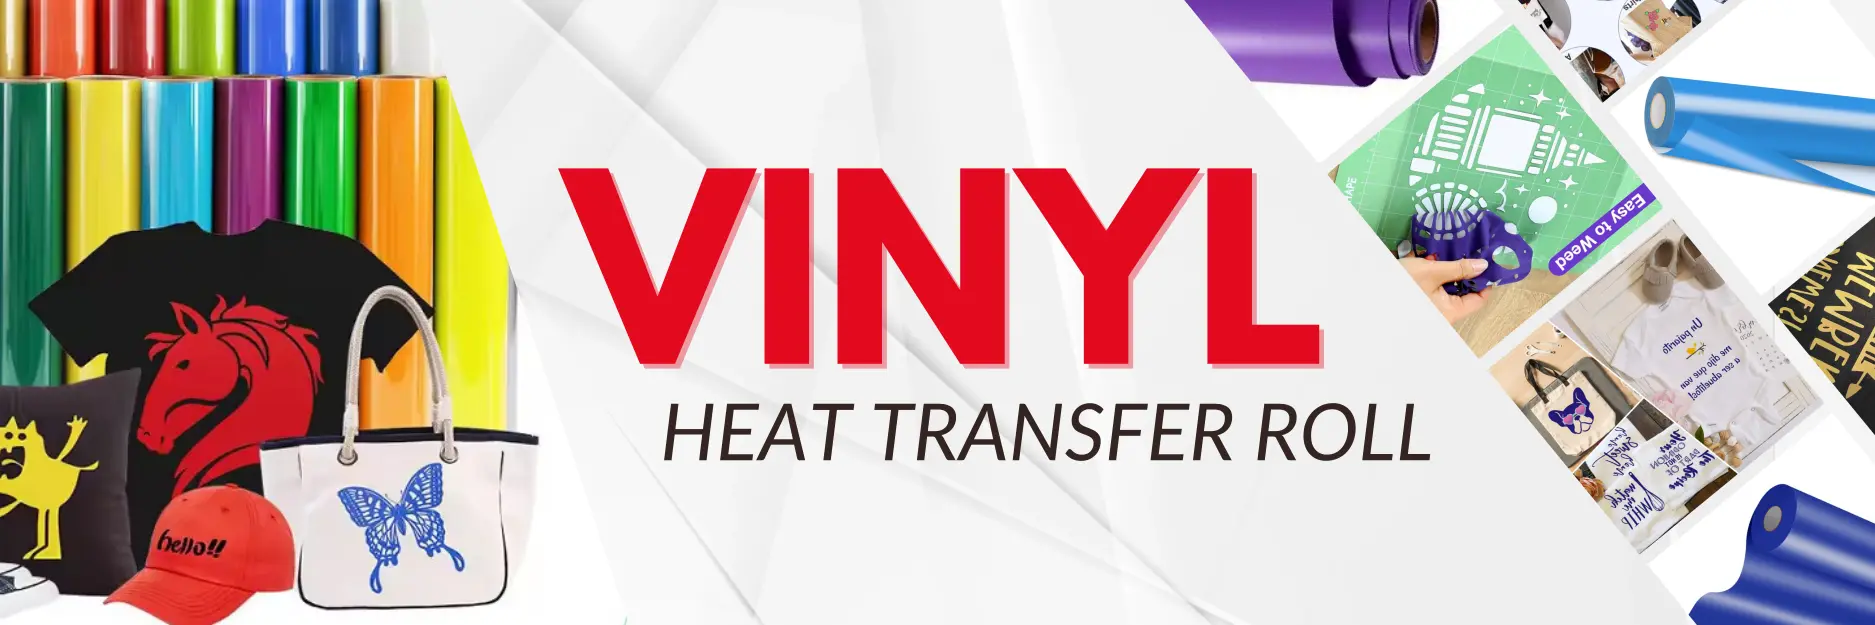 vinyl heat transfer roll